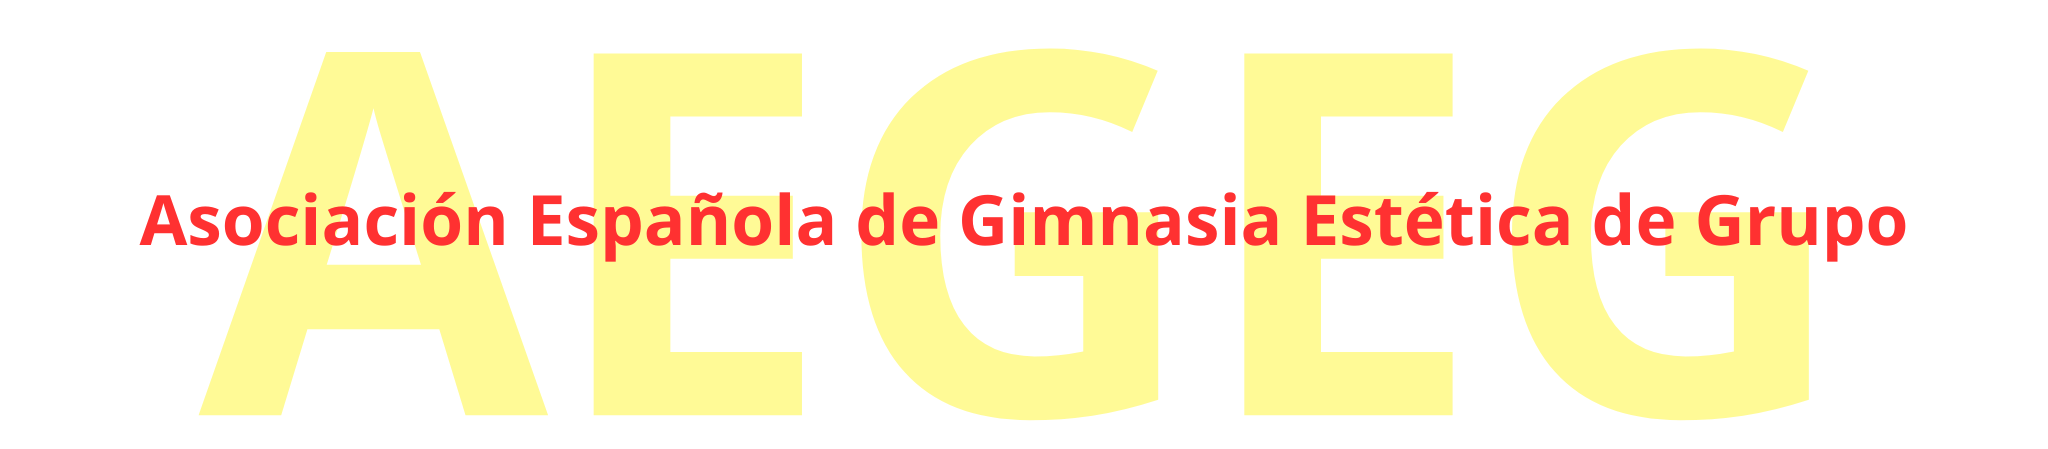 Logo AEGEG Marquesina